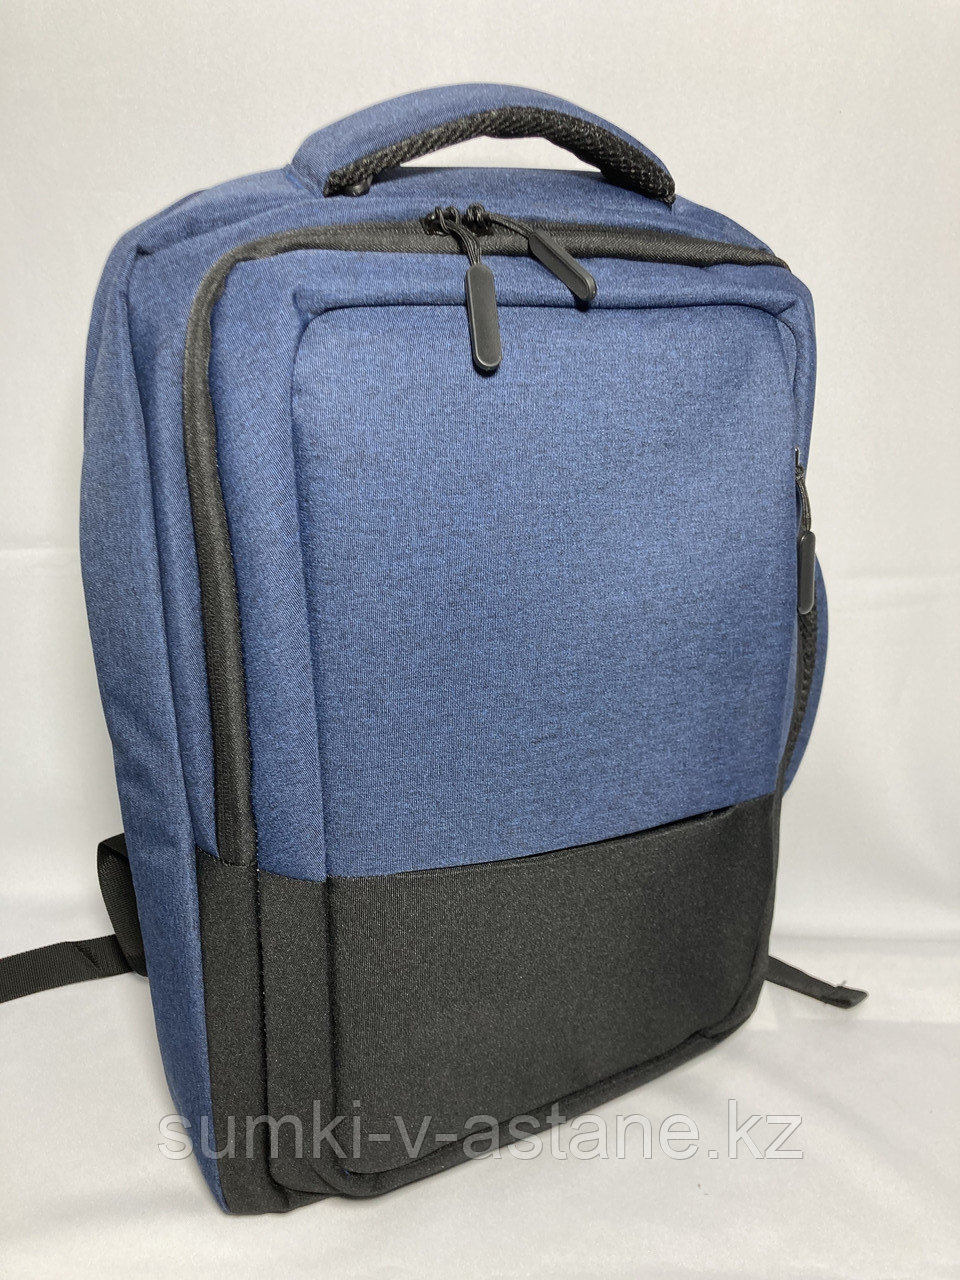 Городской Smart-рюкзак с отделом под ноутбук. Высота 44 см, ширина 30 см, глубина 10 см.